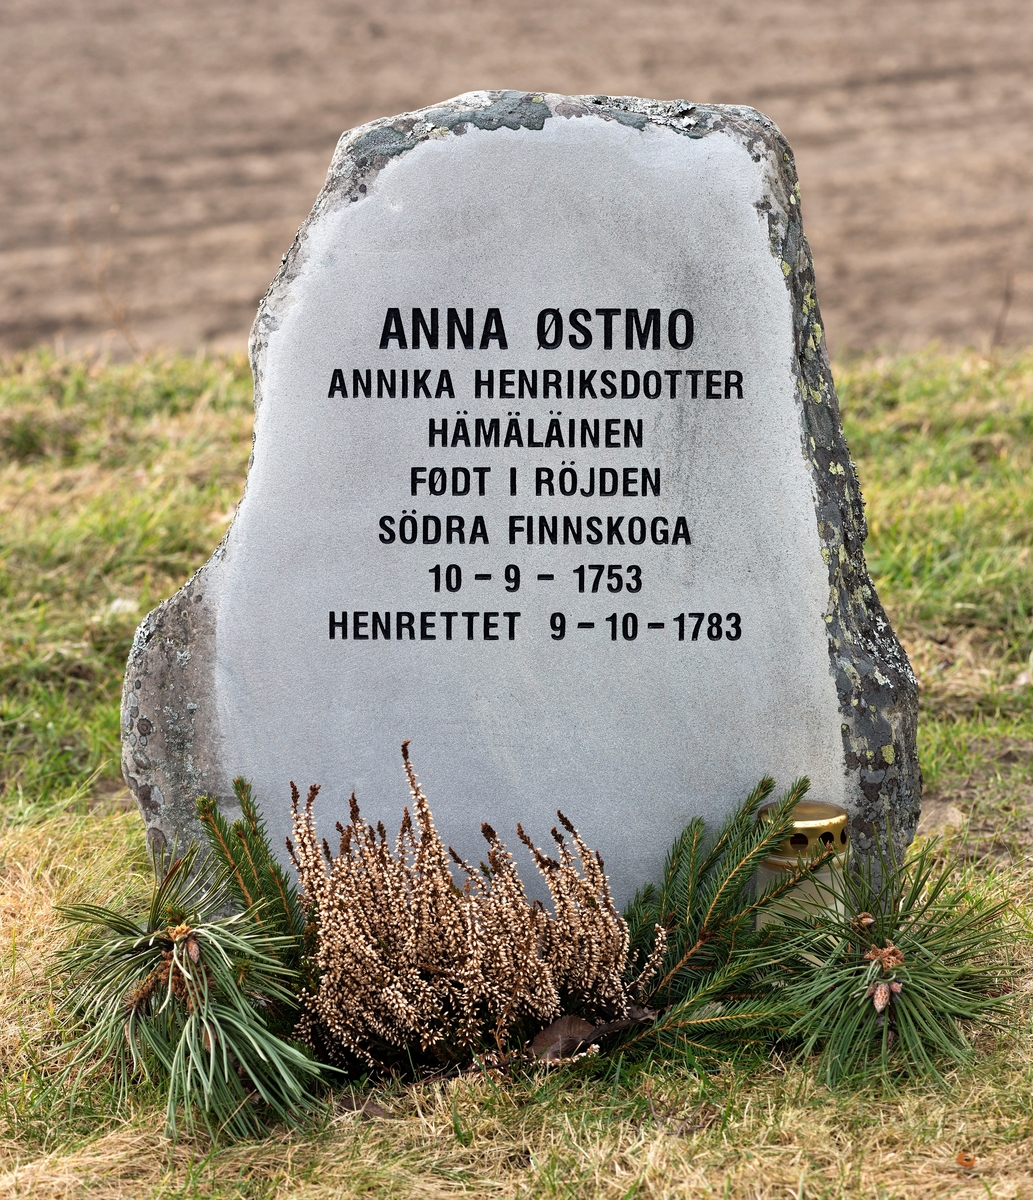 Gravstøtte, reist over Anna Østmo eller «Annika Henriksdotter Hämäläinen», som ifølge innskrift på steinen skal ha vært født i Röjden i Södra Finnskoga 10. september 1753 og død 9. oktober 1783, altså i en alder av 30 år.  Døden inntraff ved henrettelse, etter at Anna var dømt for å ha født i dølgsmål og drept barnet sitt.  Et kort resymé av saken finnes under fanen «Bildehistorikk».  I forbindelse med gravearbeid 2010 ble det funnet et hodeløst kvinneskjelett i området der man mener at henrettelsen fant sted.  Dette utløste diskusjoner om hvordan man skulle forholde seg til det man antok var levningene etter den henrettete kvinna.  Det endte med en begravelse og oppsetting av ei gravstøtte av naturstein som var slipt på fronten, som dermed fikk ei gråkvit overflate, med inngravert, svartlakkert tekst.  Da dette fotografiet ble tatt var gravstedet pyntet med ei lyngplante og litt gran- og furubar.  Vi skimter også et «gravlys», en stearinfylt sylindrisk beholder av plast med messingfarget lokk med trekkhull på sidene. 

Fotografiet er tatt som et illustrasjonsforslag til en artikkel Kari Sommerseth-Jacobsen fra Kvinnemuseet - Museene i Glåmdal har skrevet om det moderne etterspillet saken mot tjenestejenta Anna Østmo (i noen sammenhenger også stavet Anna Austmo) fikk etter skjelettfunnet i 2010.  Artikkelen var fortsatt upublisert da dette fotografiet ble registrert.